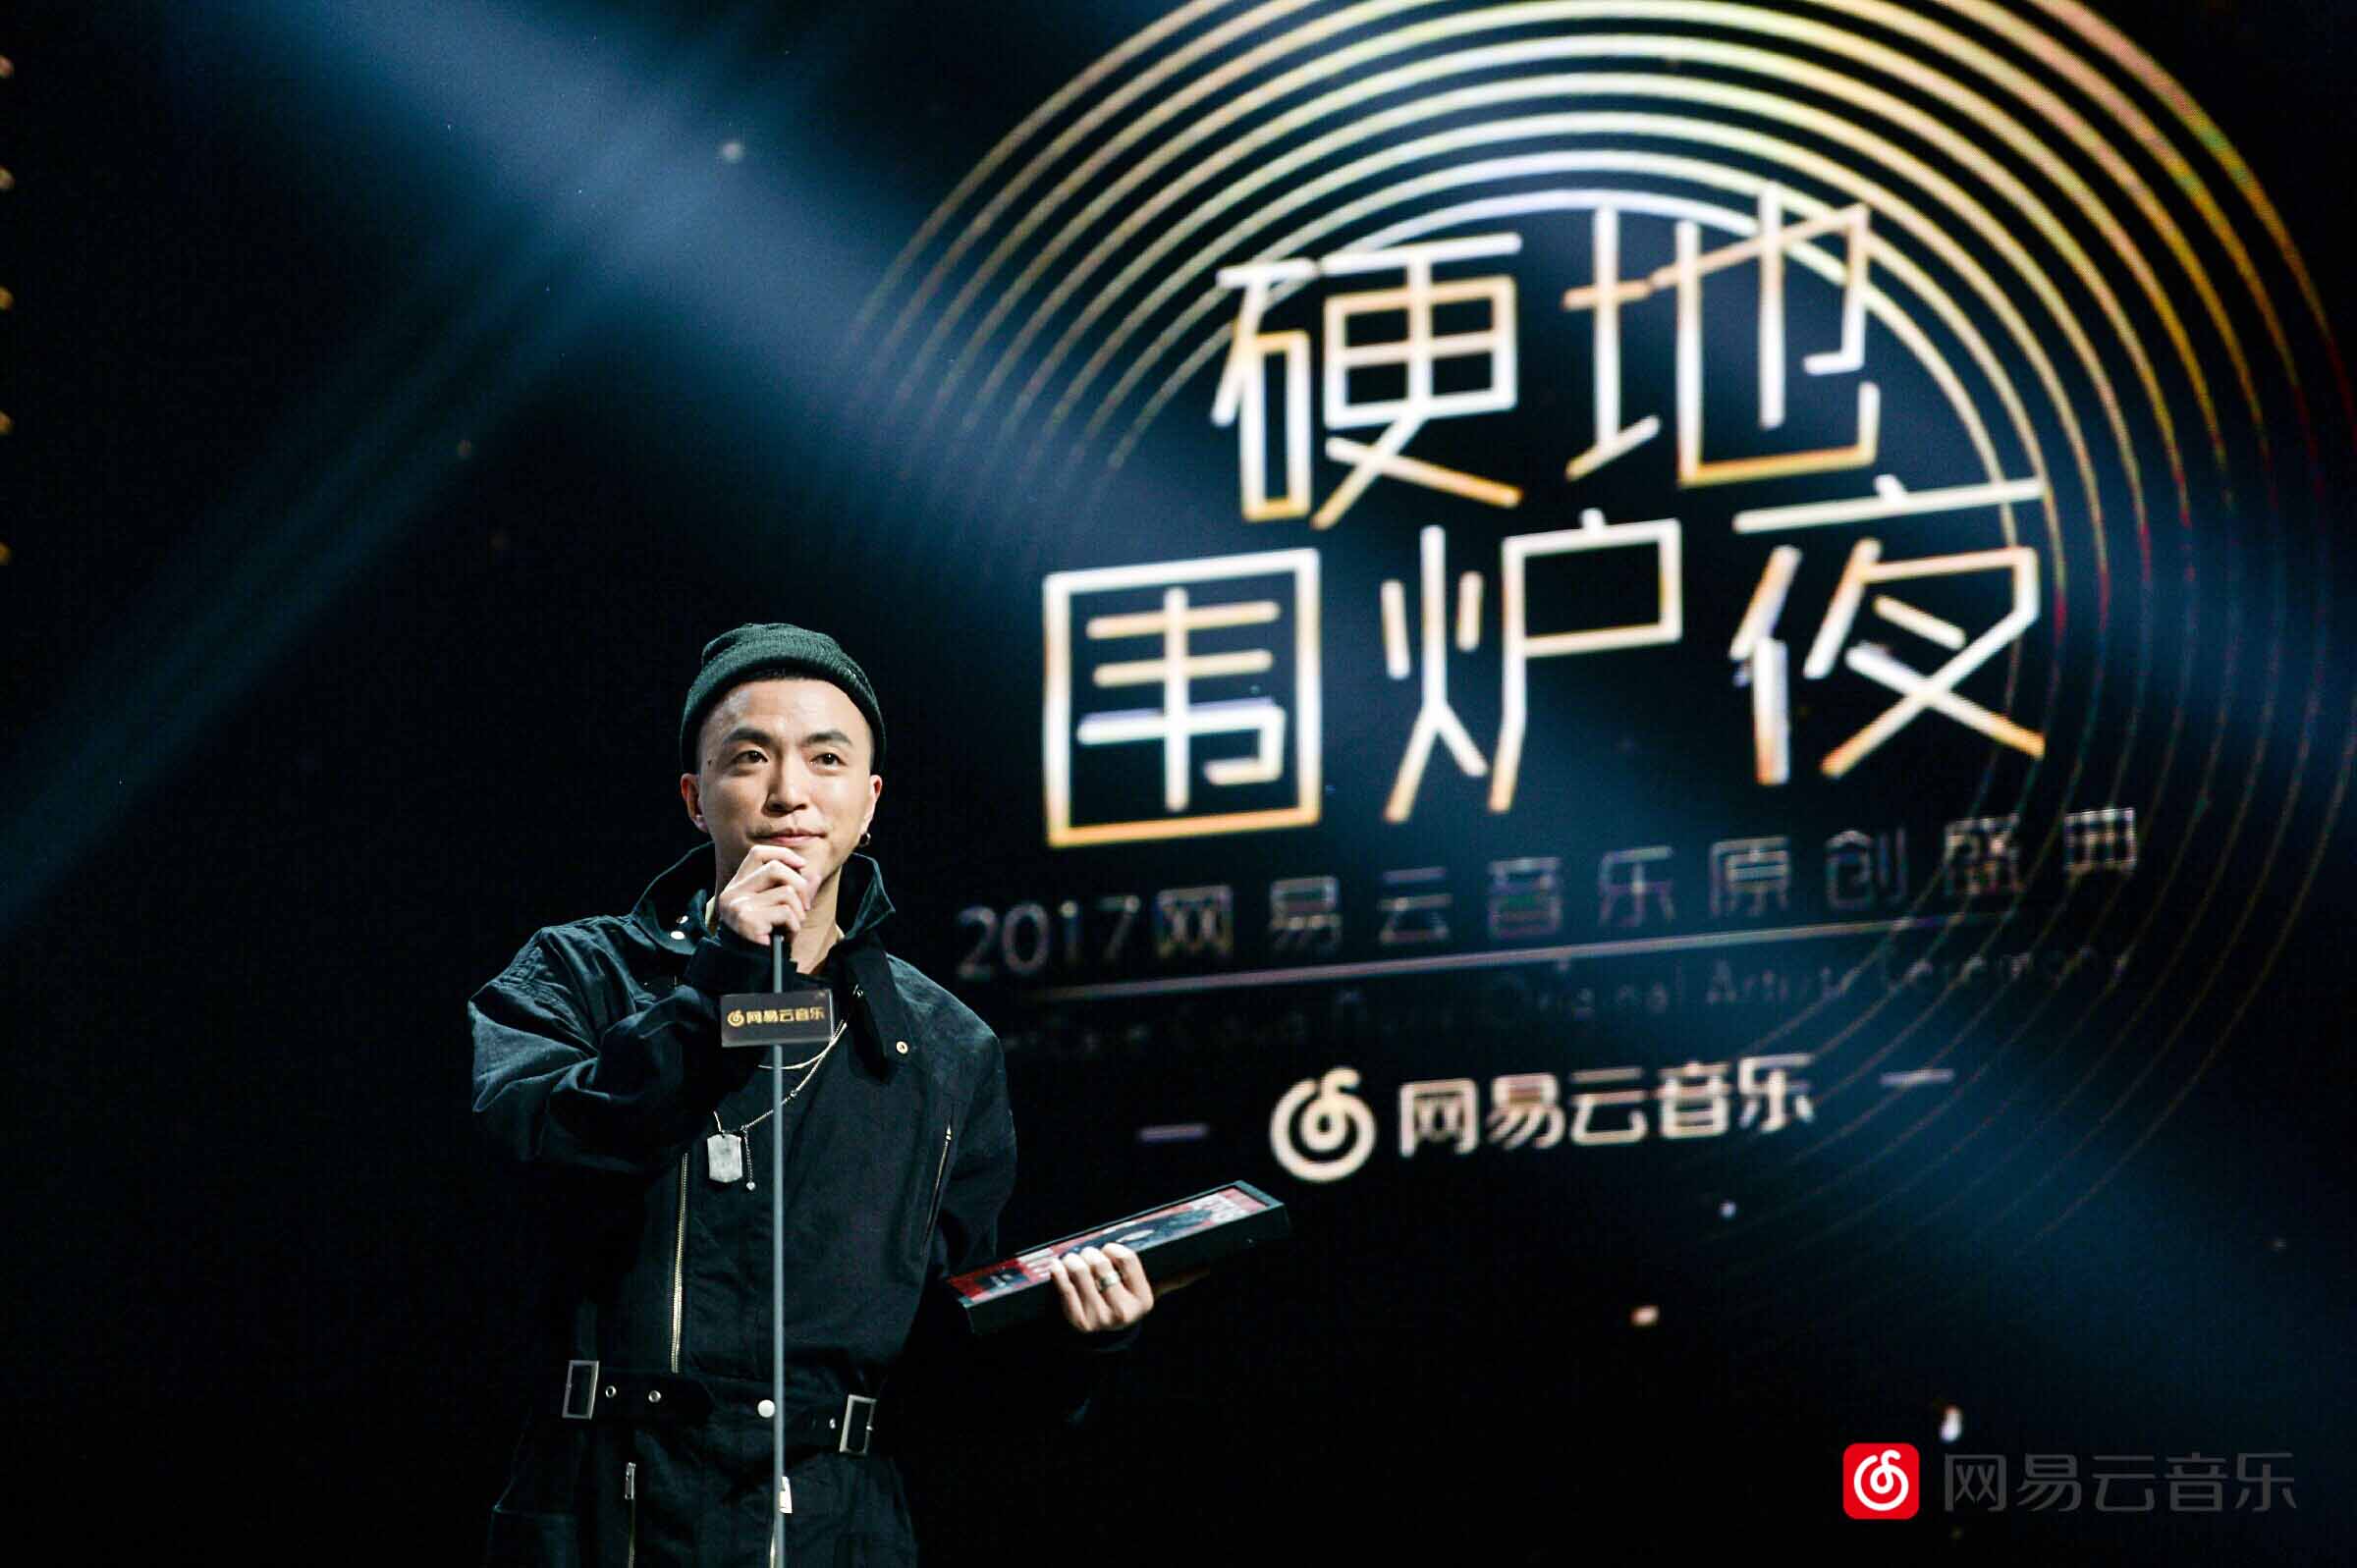 硬地围炉夜·2017网易云音乐原创盛典在北京举行